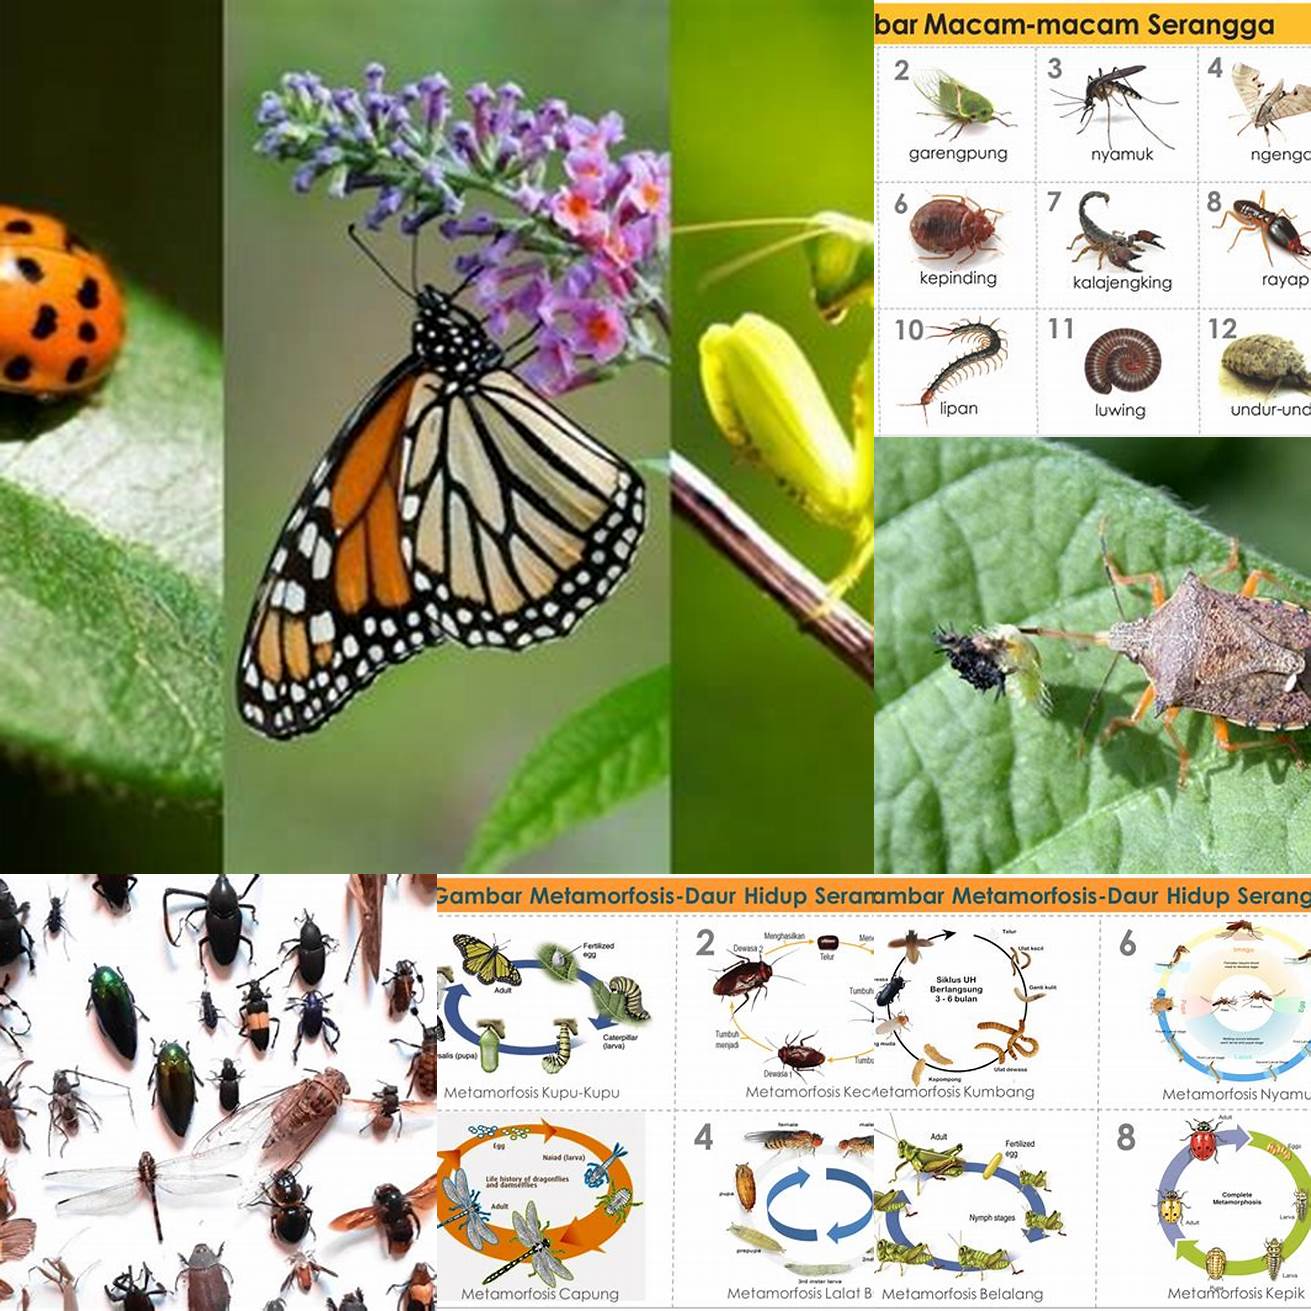 Memungkinkan serangga hidup di lingkungan yang berbeda-beda